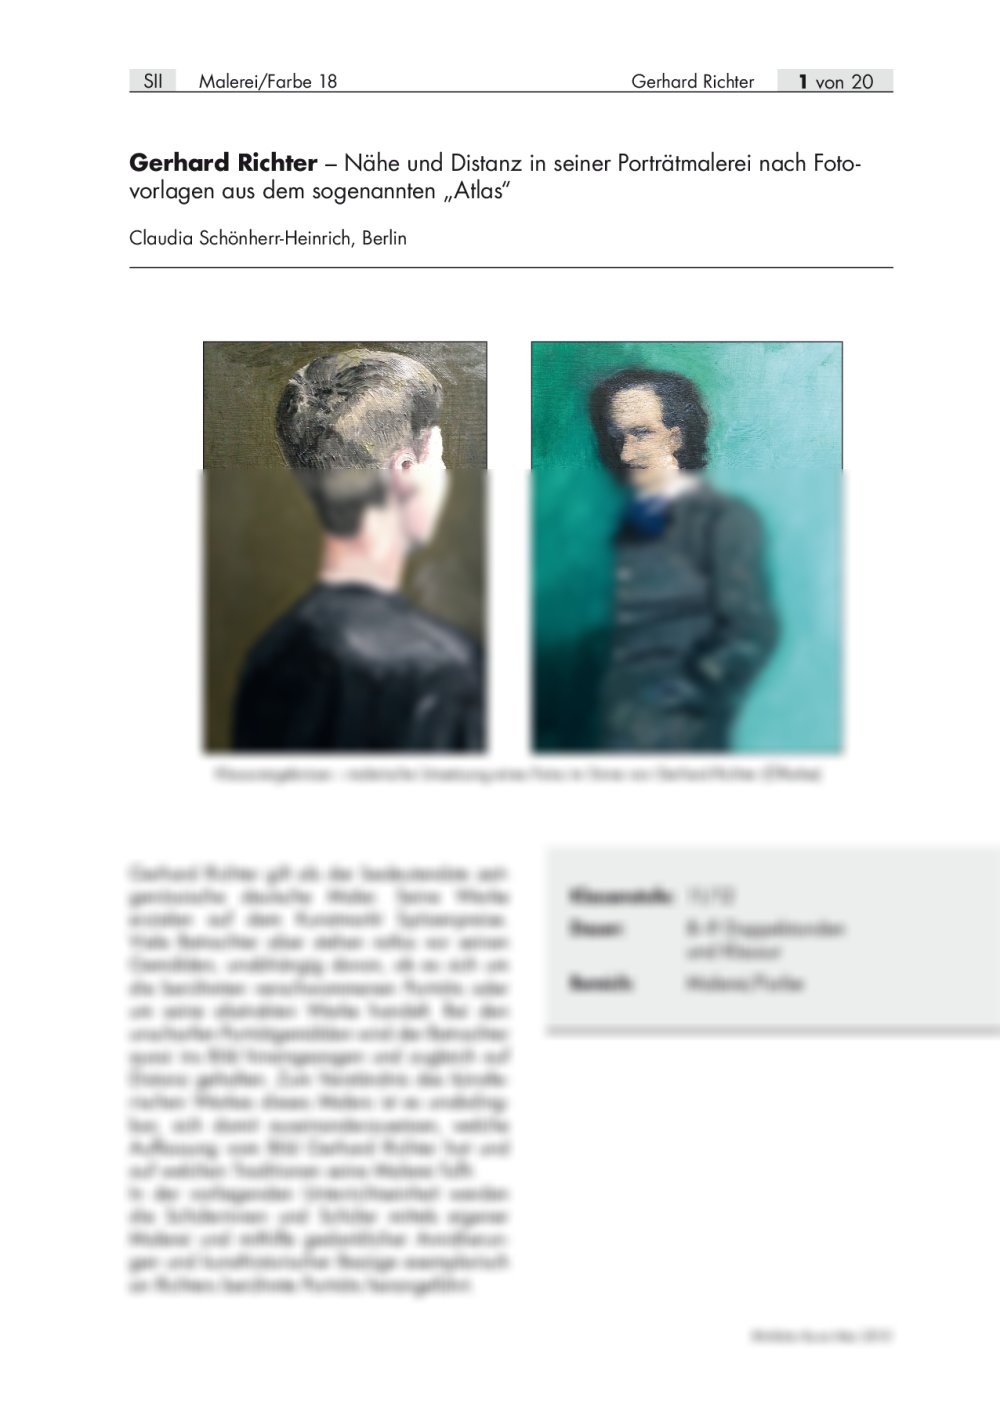 Nähe und Distanz in der Porträtmalerei von Gerhard Richter - Seite 1